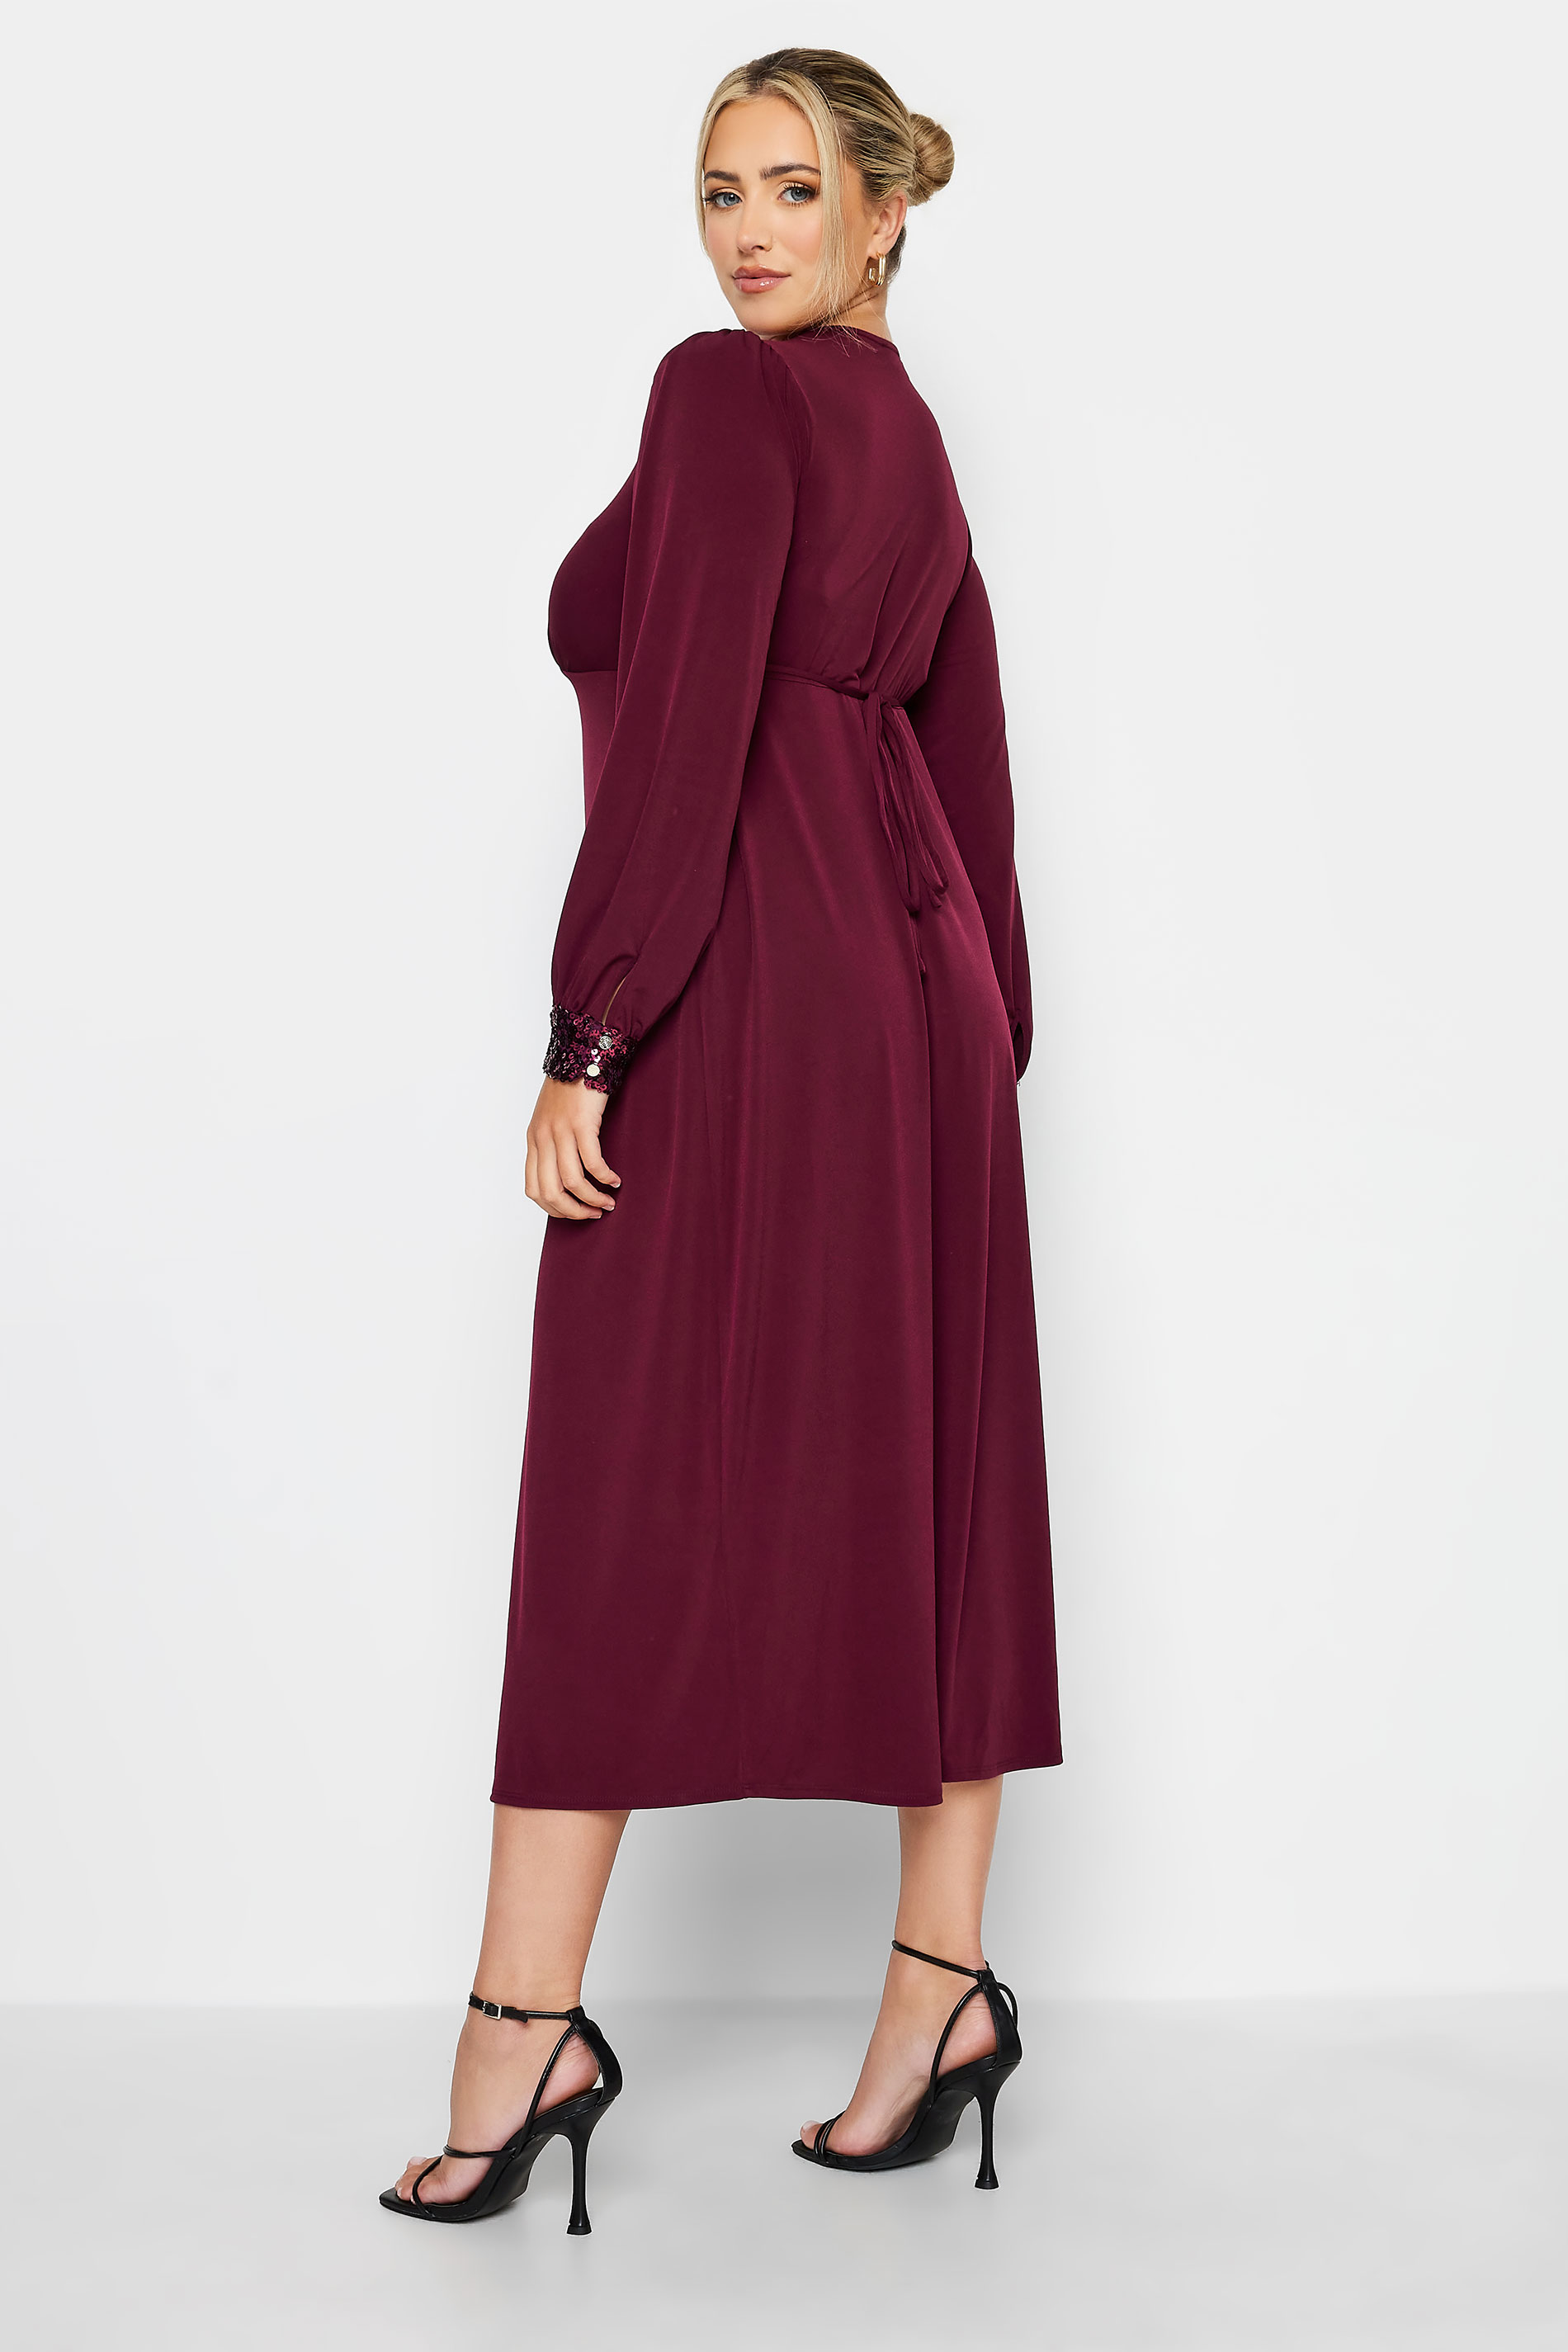 YOURS LONDON Plus Size Plum Purple Sequin Split Front Dress | Yours Clothing 3